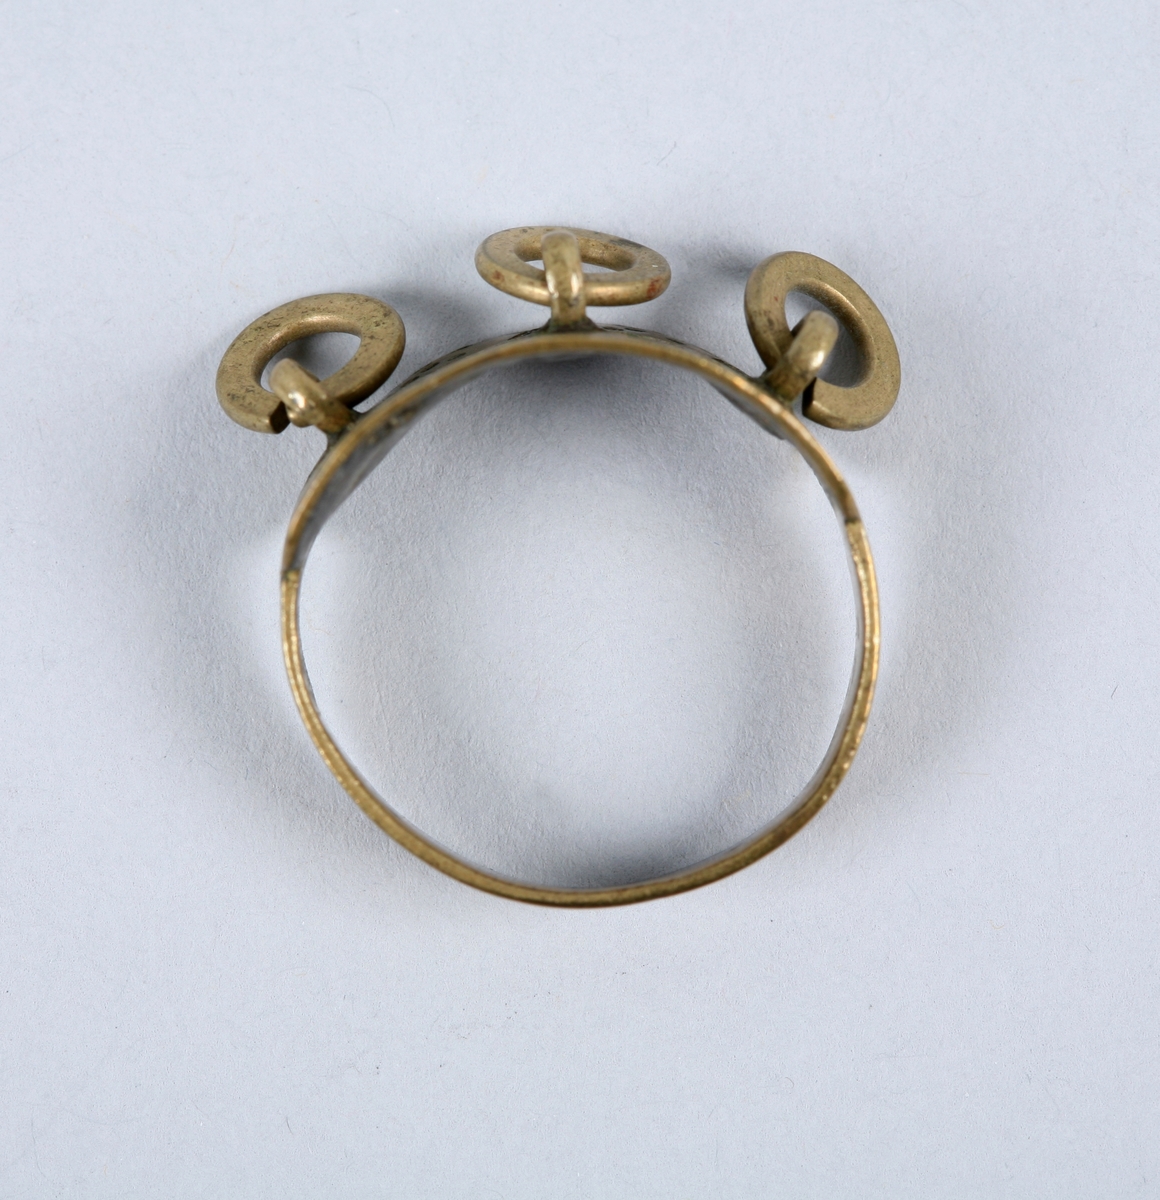 Fingerring av messing dekorert med 3 mindre ringar, lodda på fester på ringen. Overflata på ringen er dekorert med stempla punkt og strekar.